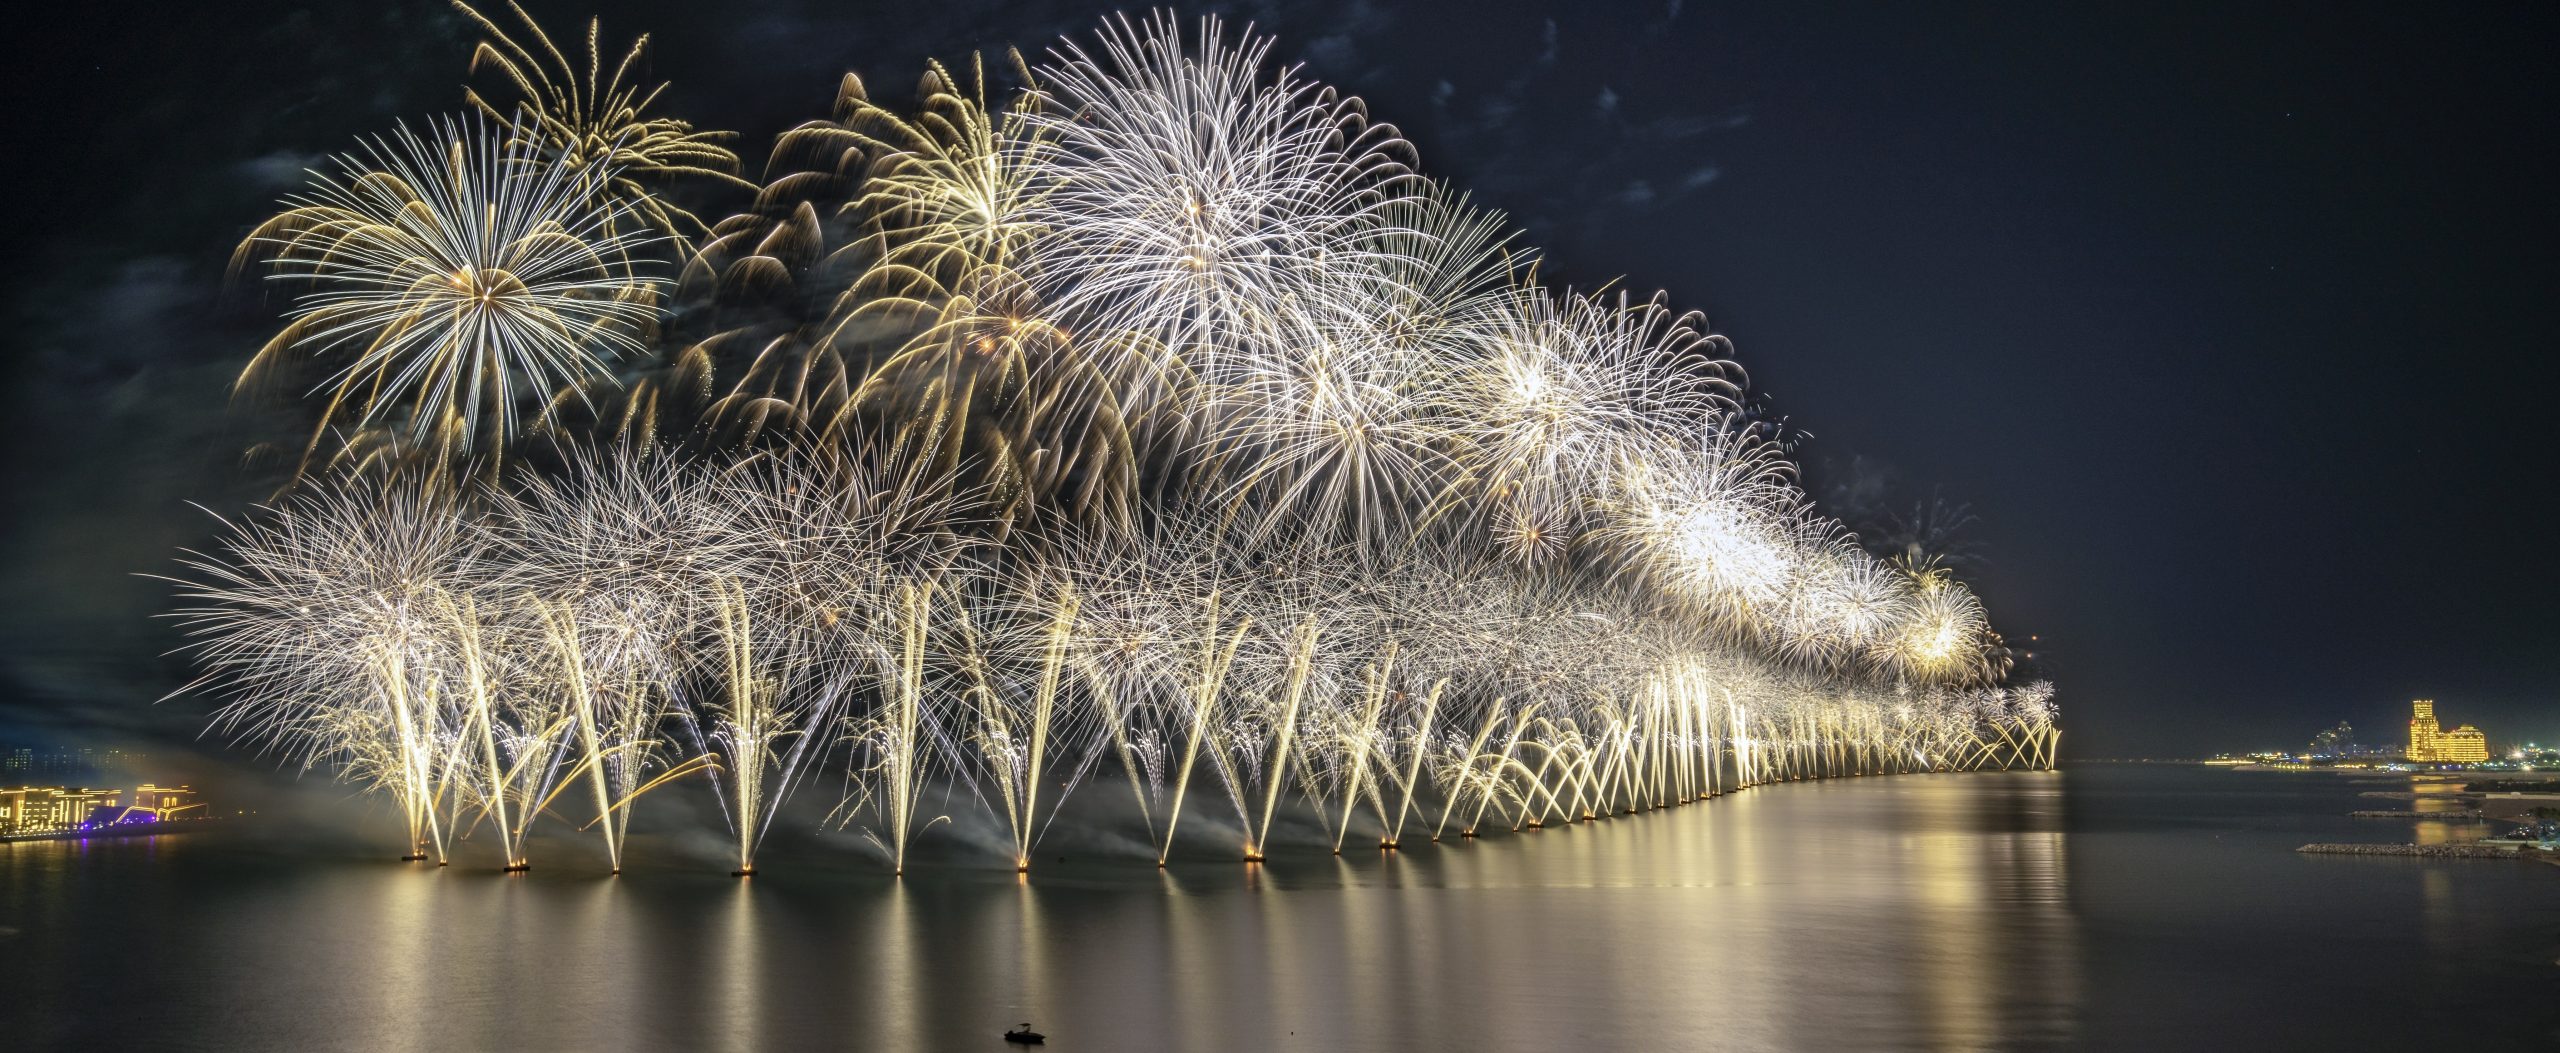 Ras Al Khaimah Silvester-Feuerwerk feiert mit zwei neuen Guinness-Weltrekordversuchen zur Begrüßung von 2022